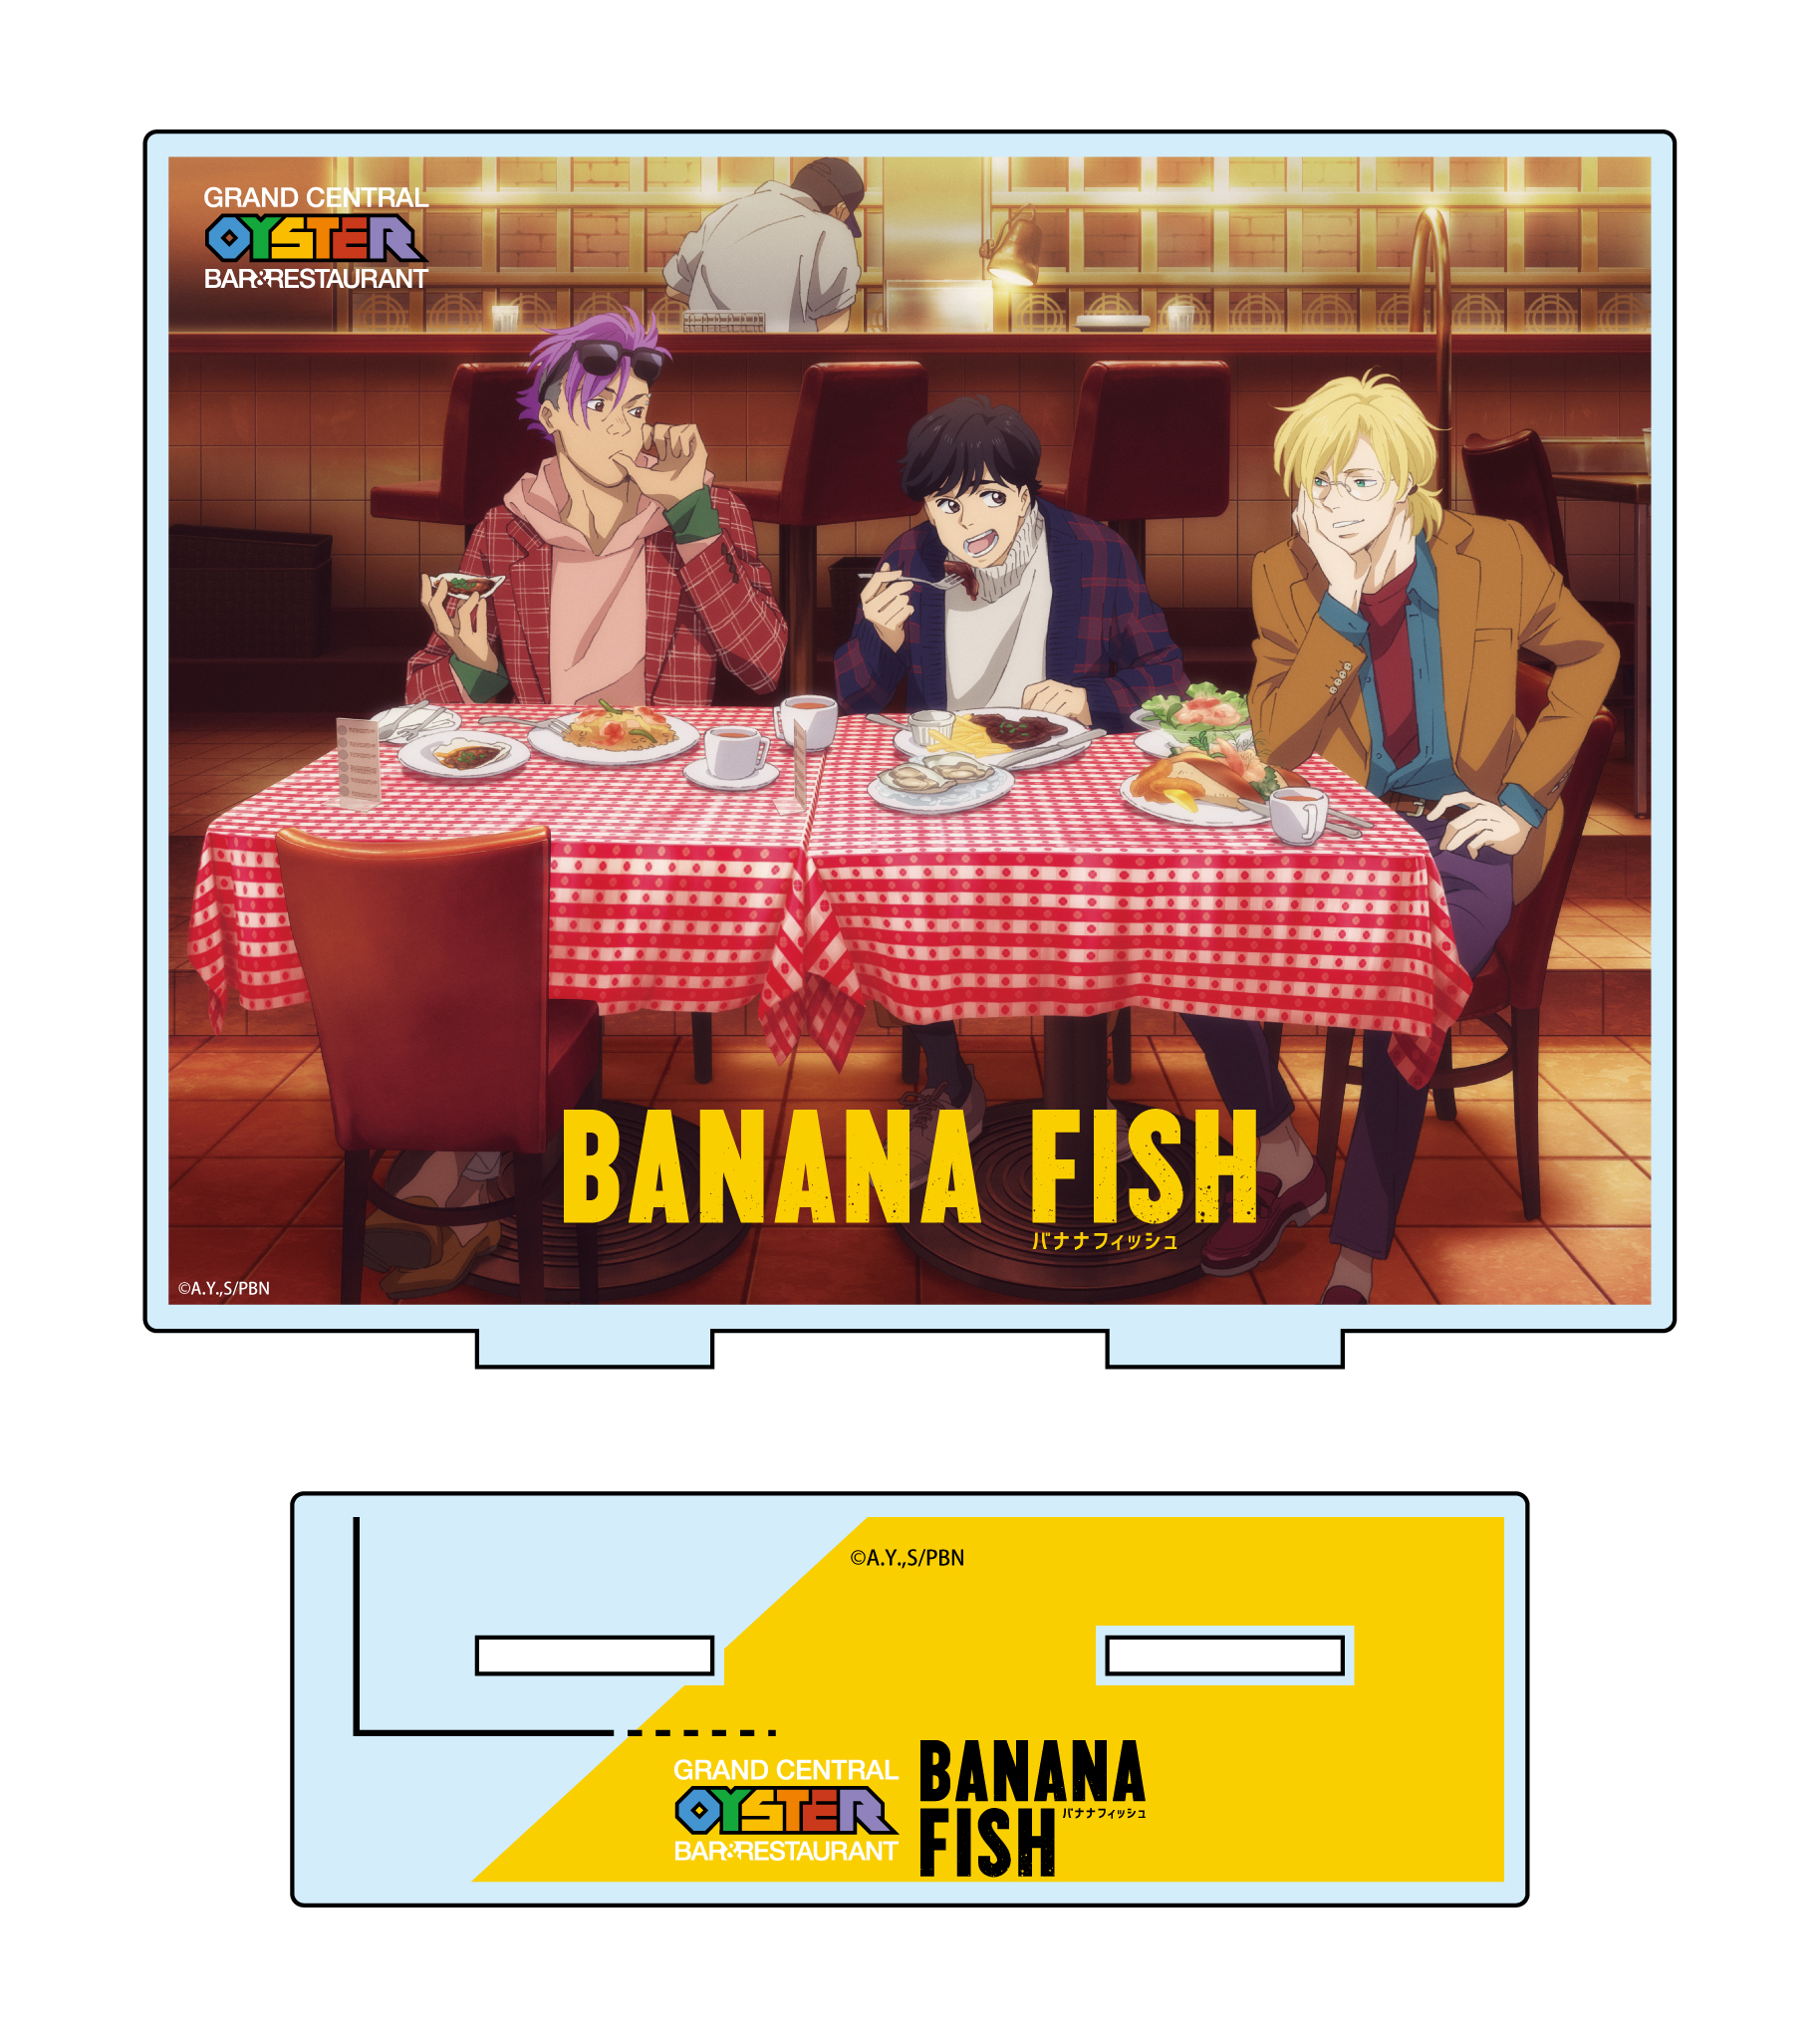 「グランド・セントラル・オイスター・バー＆レストラン」品川店×TVアニメ「BANANA FISH」コラボ第2弾登場9